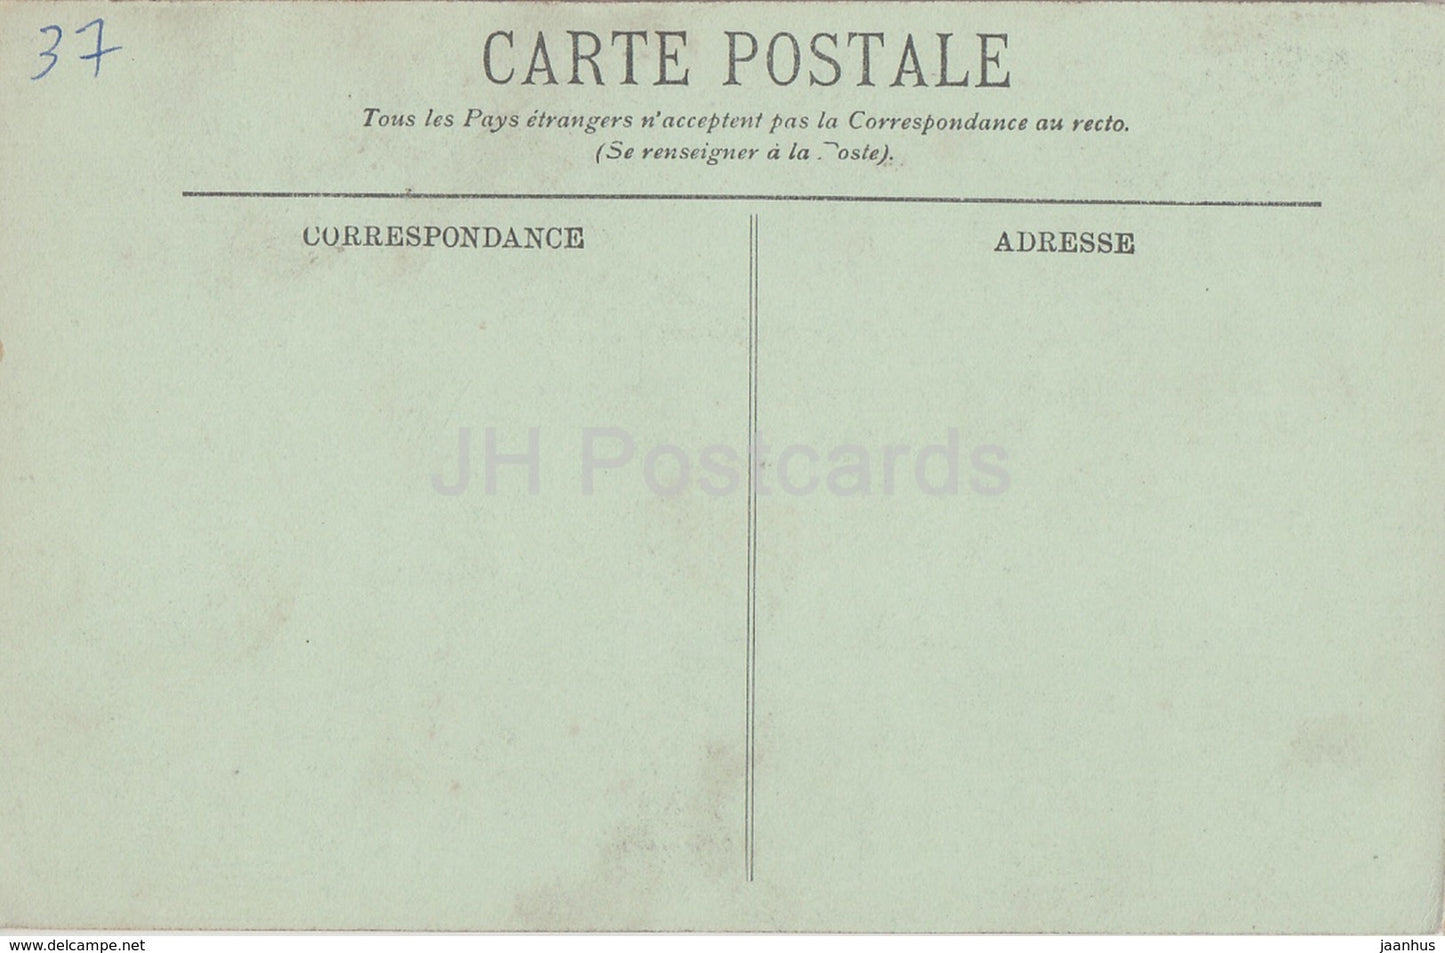 Loches - Le Chateau - Porte de la Tour Agnes Sorel - castle - 22 - old postcard - France - unused